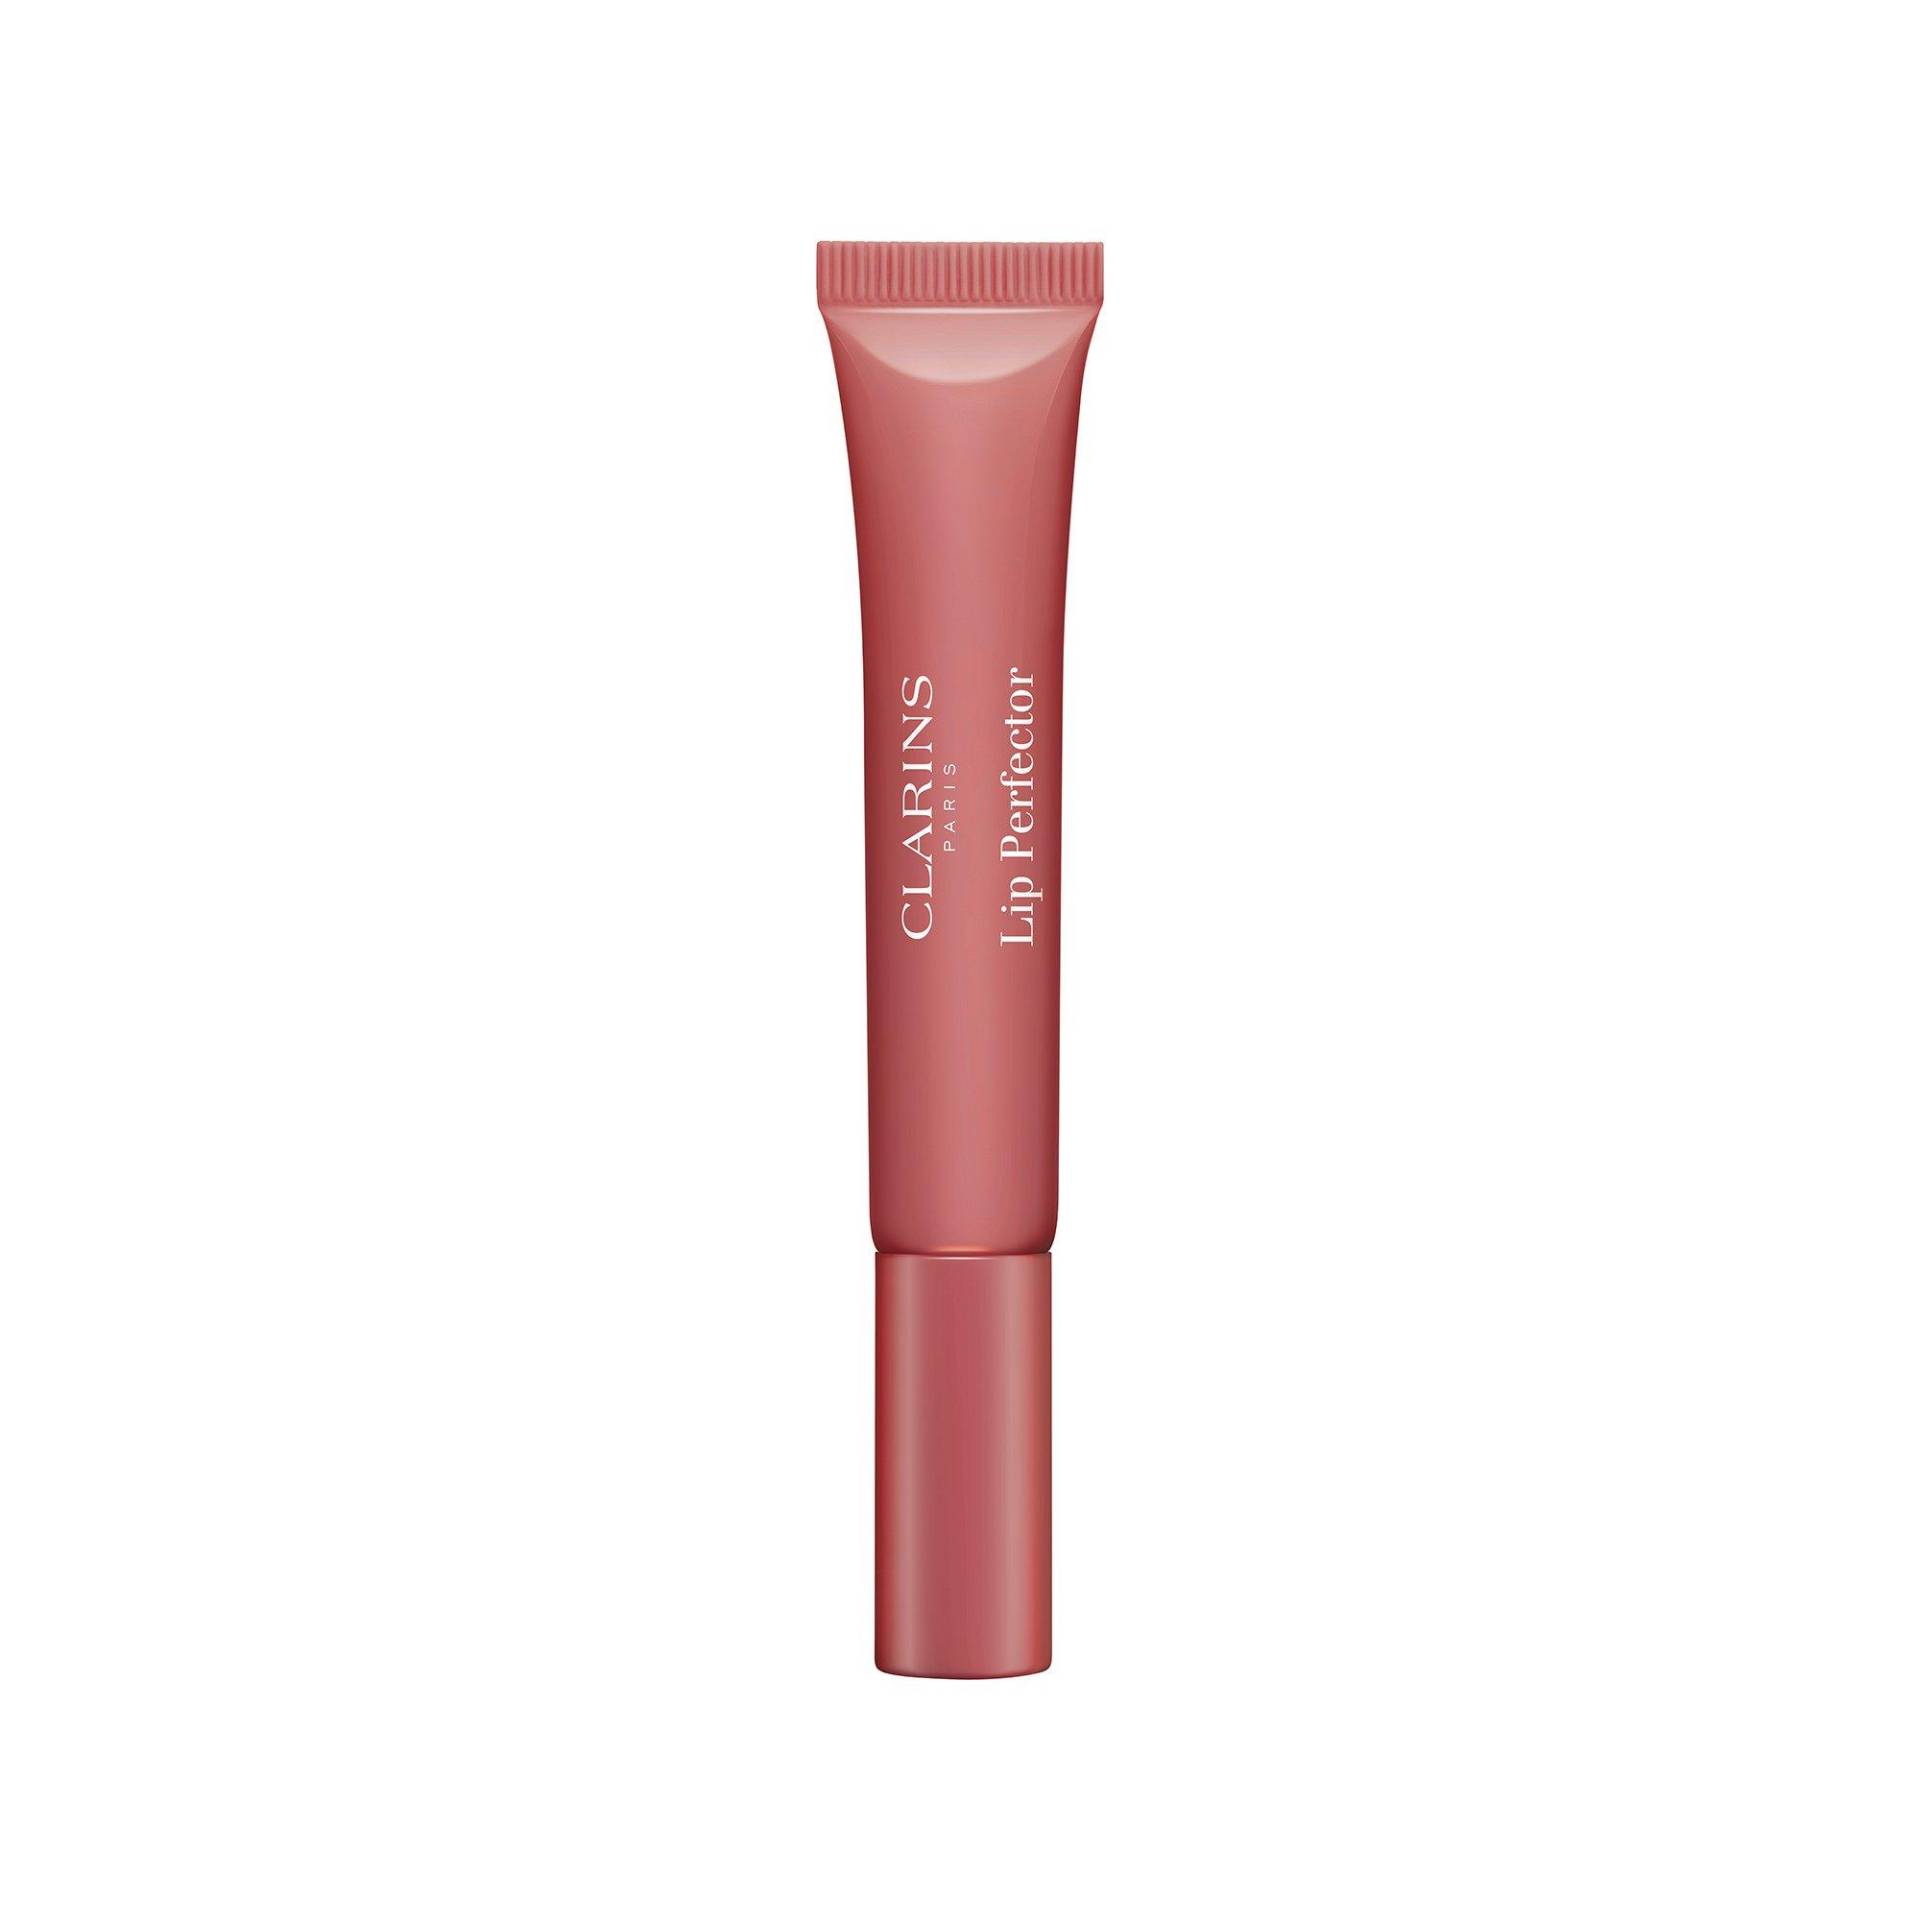 Lip Perfector Glow - Lippen-makeup Mit Glanz-finish Damen  Intense Rosebud null/12ml von CLARINS